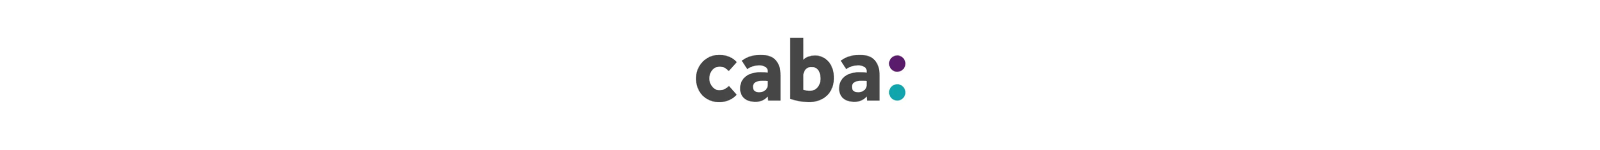 CABA logo 